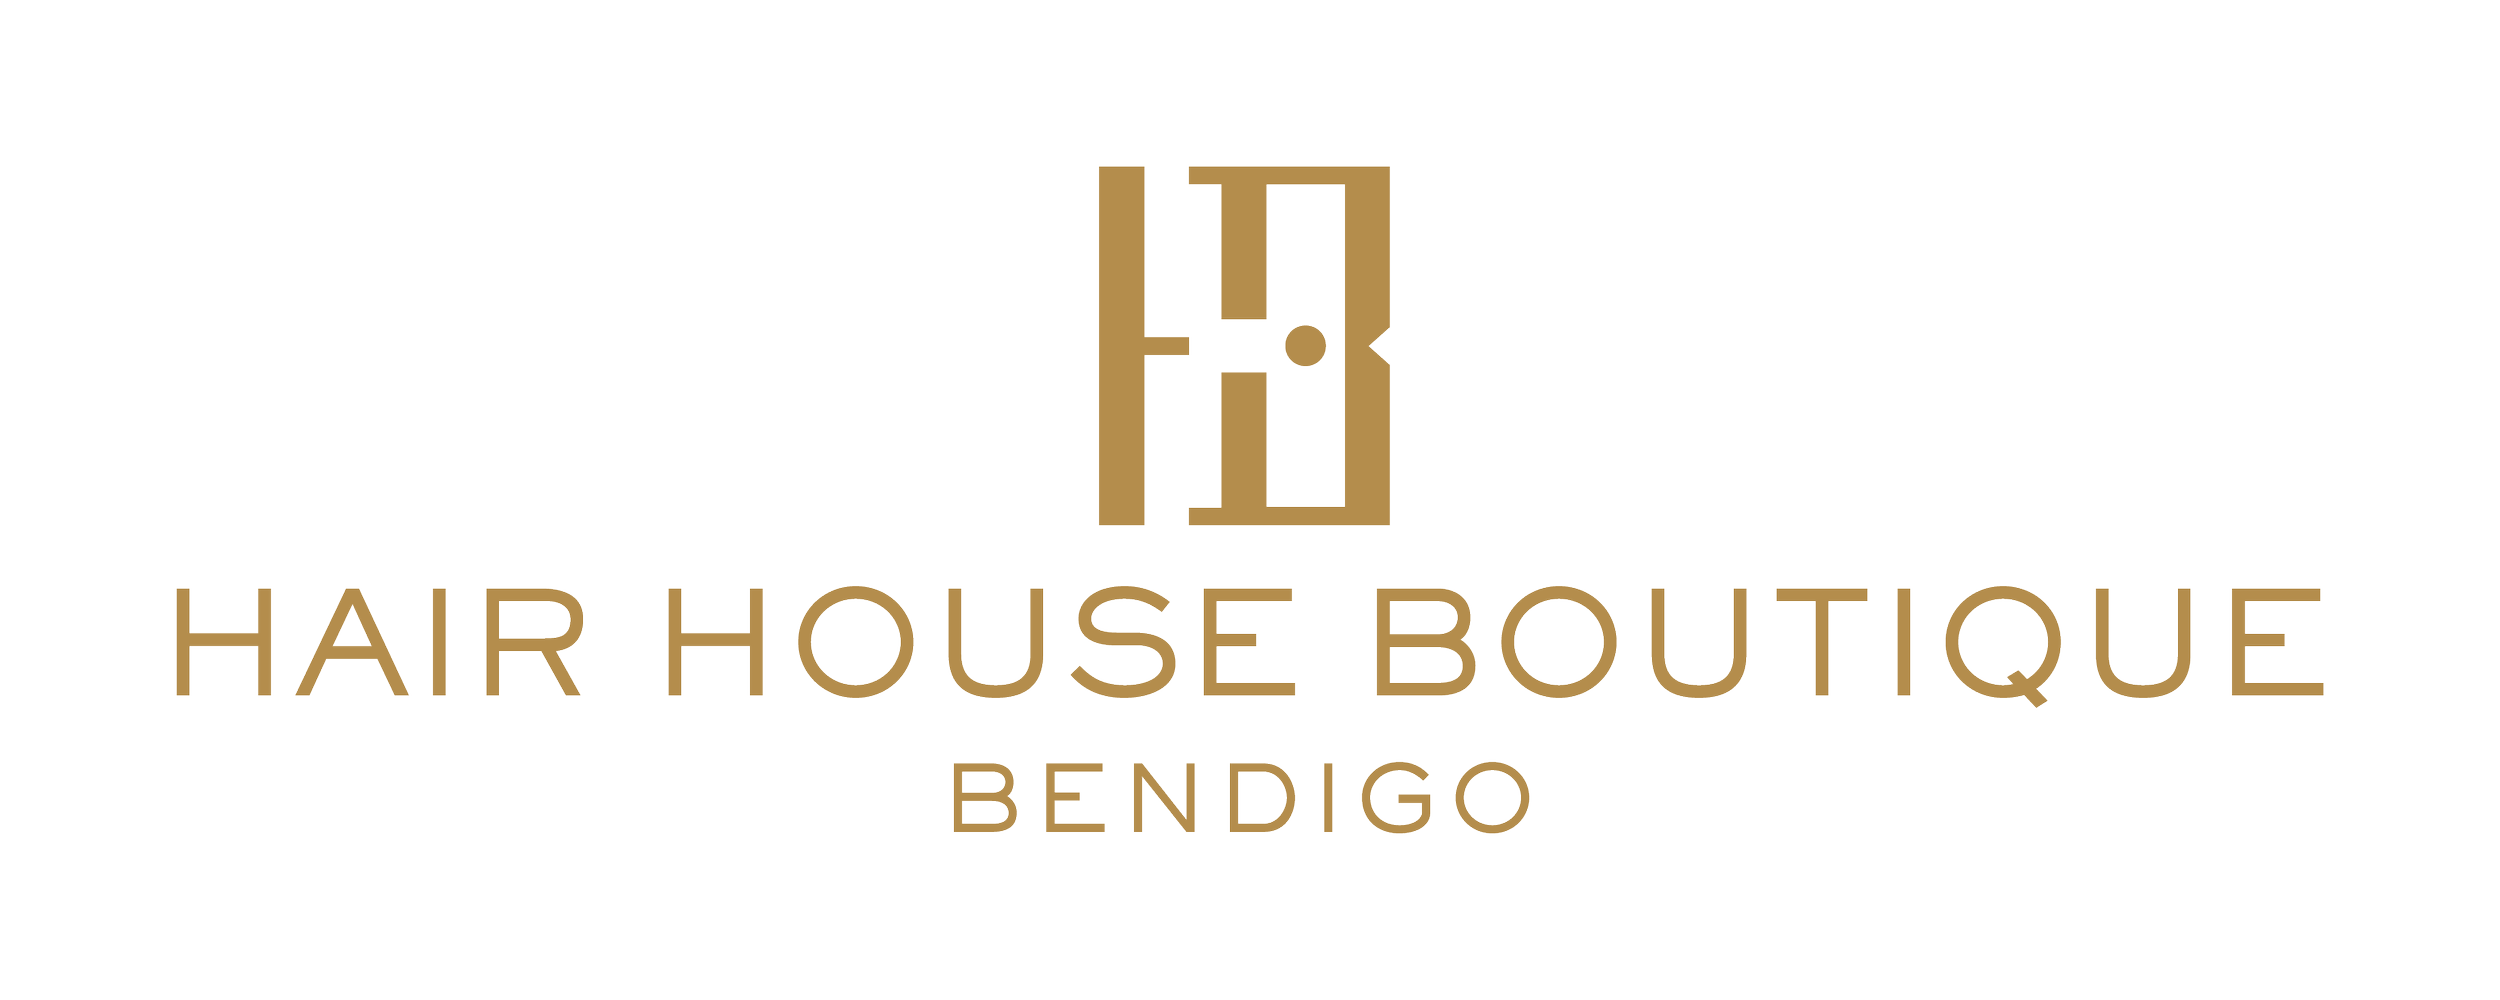 Hair House Boutique Bendigo